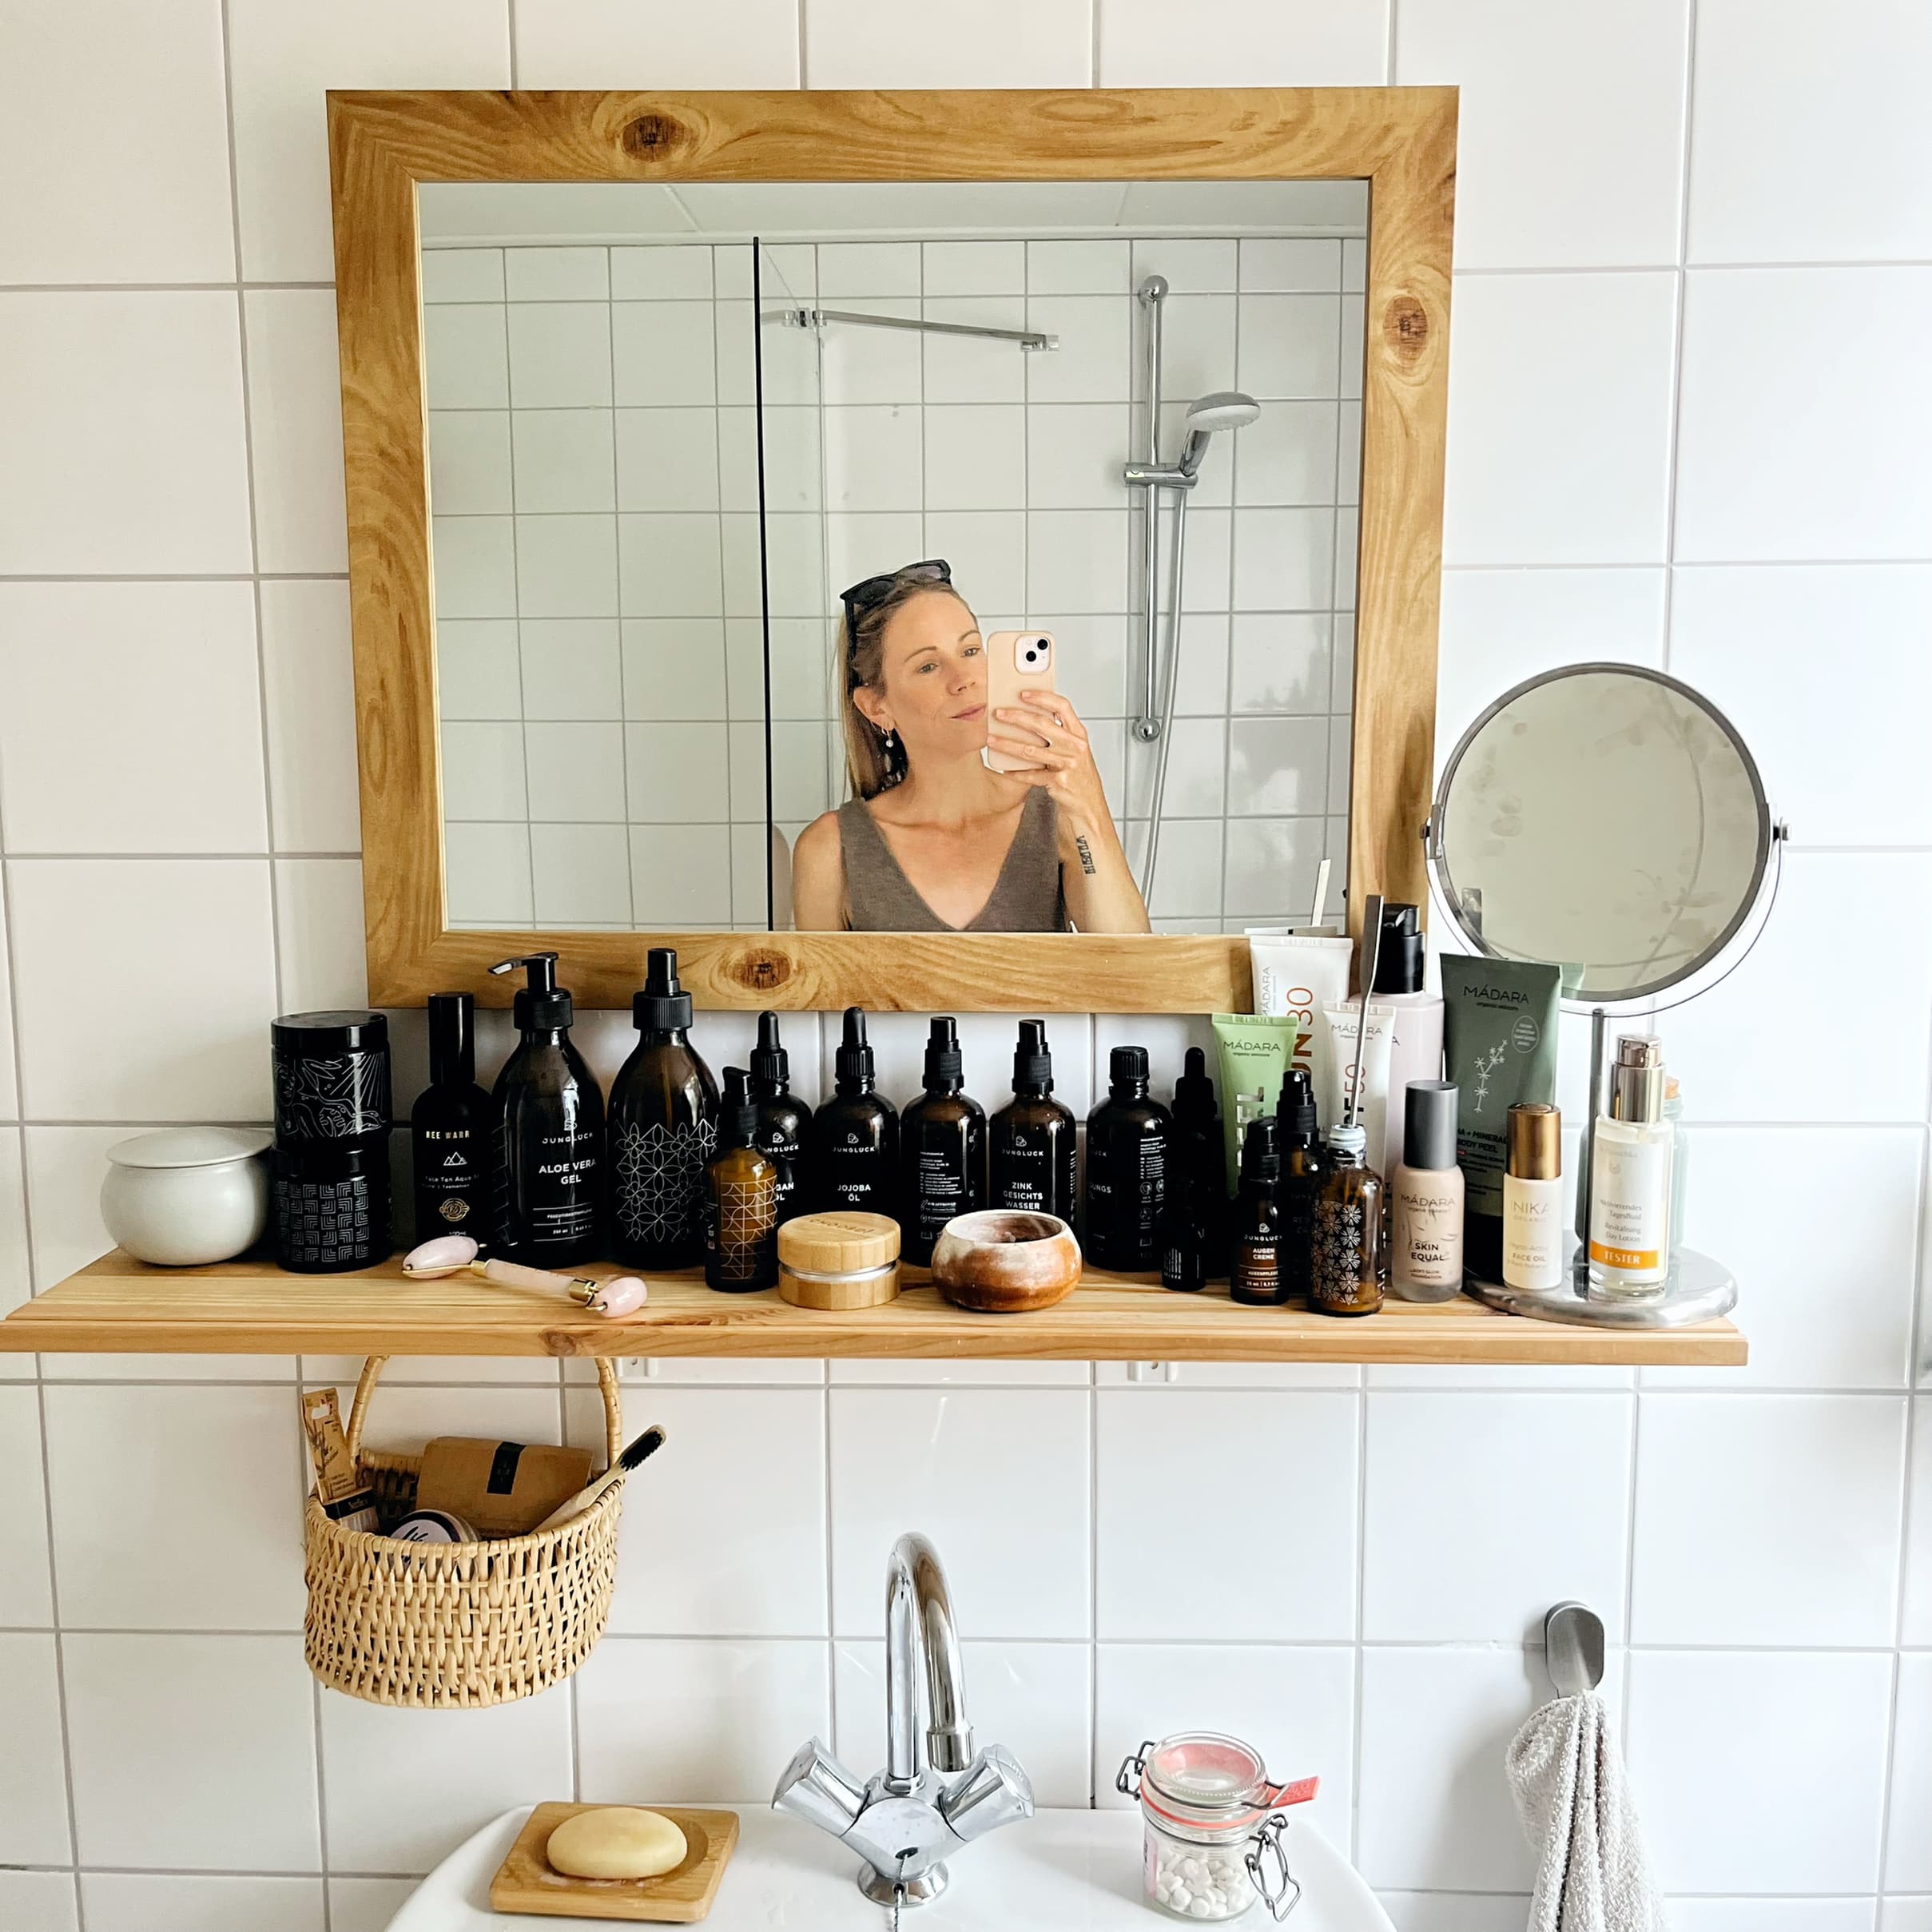 Leger Hedendaags Nebu Plastic vrije badkamer: 10 tips voor milieuvriendelijk douchen